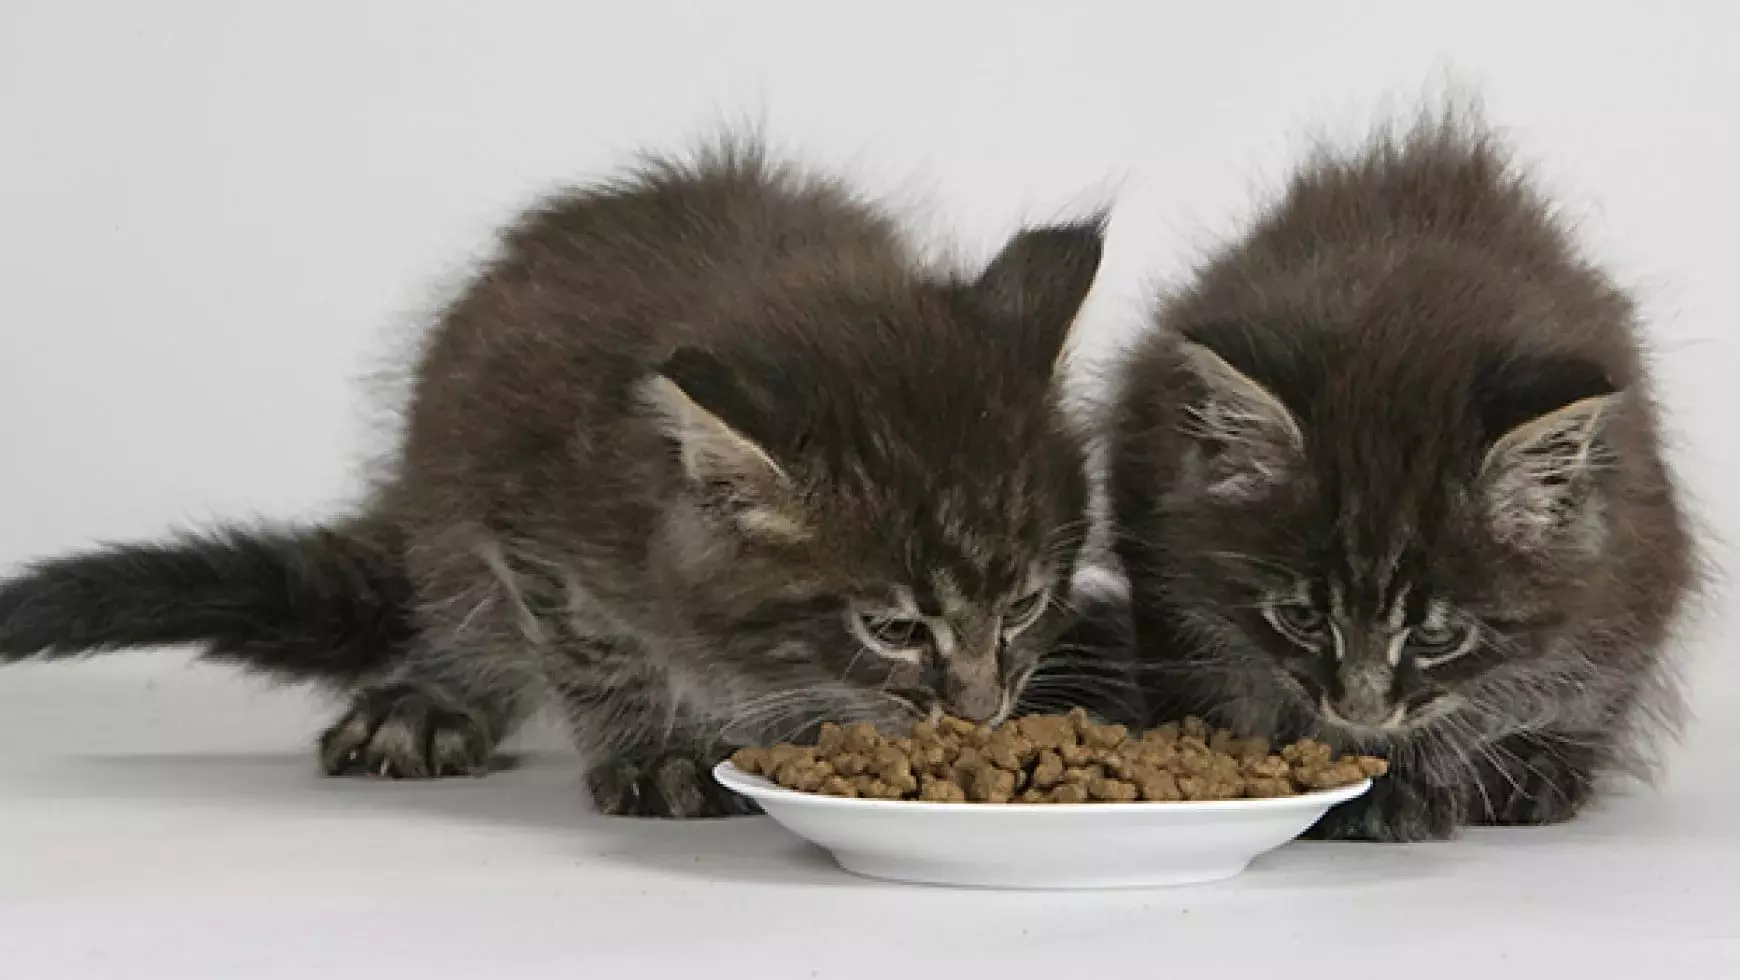 بلی کے بچے کے لئے کھانا (31 فوٹو): چھوٹے بلی کے بچے کے لئے اچھے کھانے کا انتخاب کیسے کریں؟ بہترین مینوفیکچررز کی درجہ بندی جانوروں کی جائزہ 11852_6